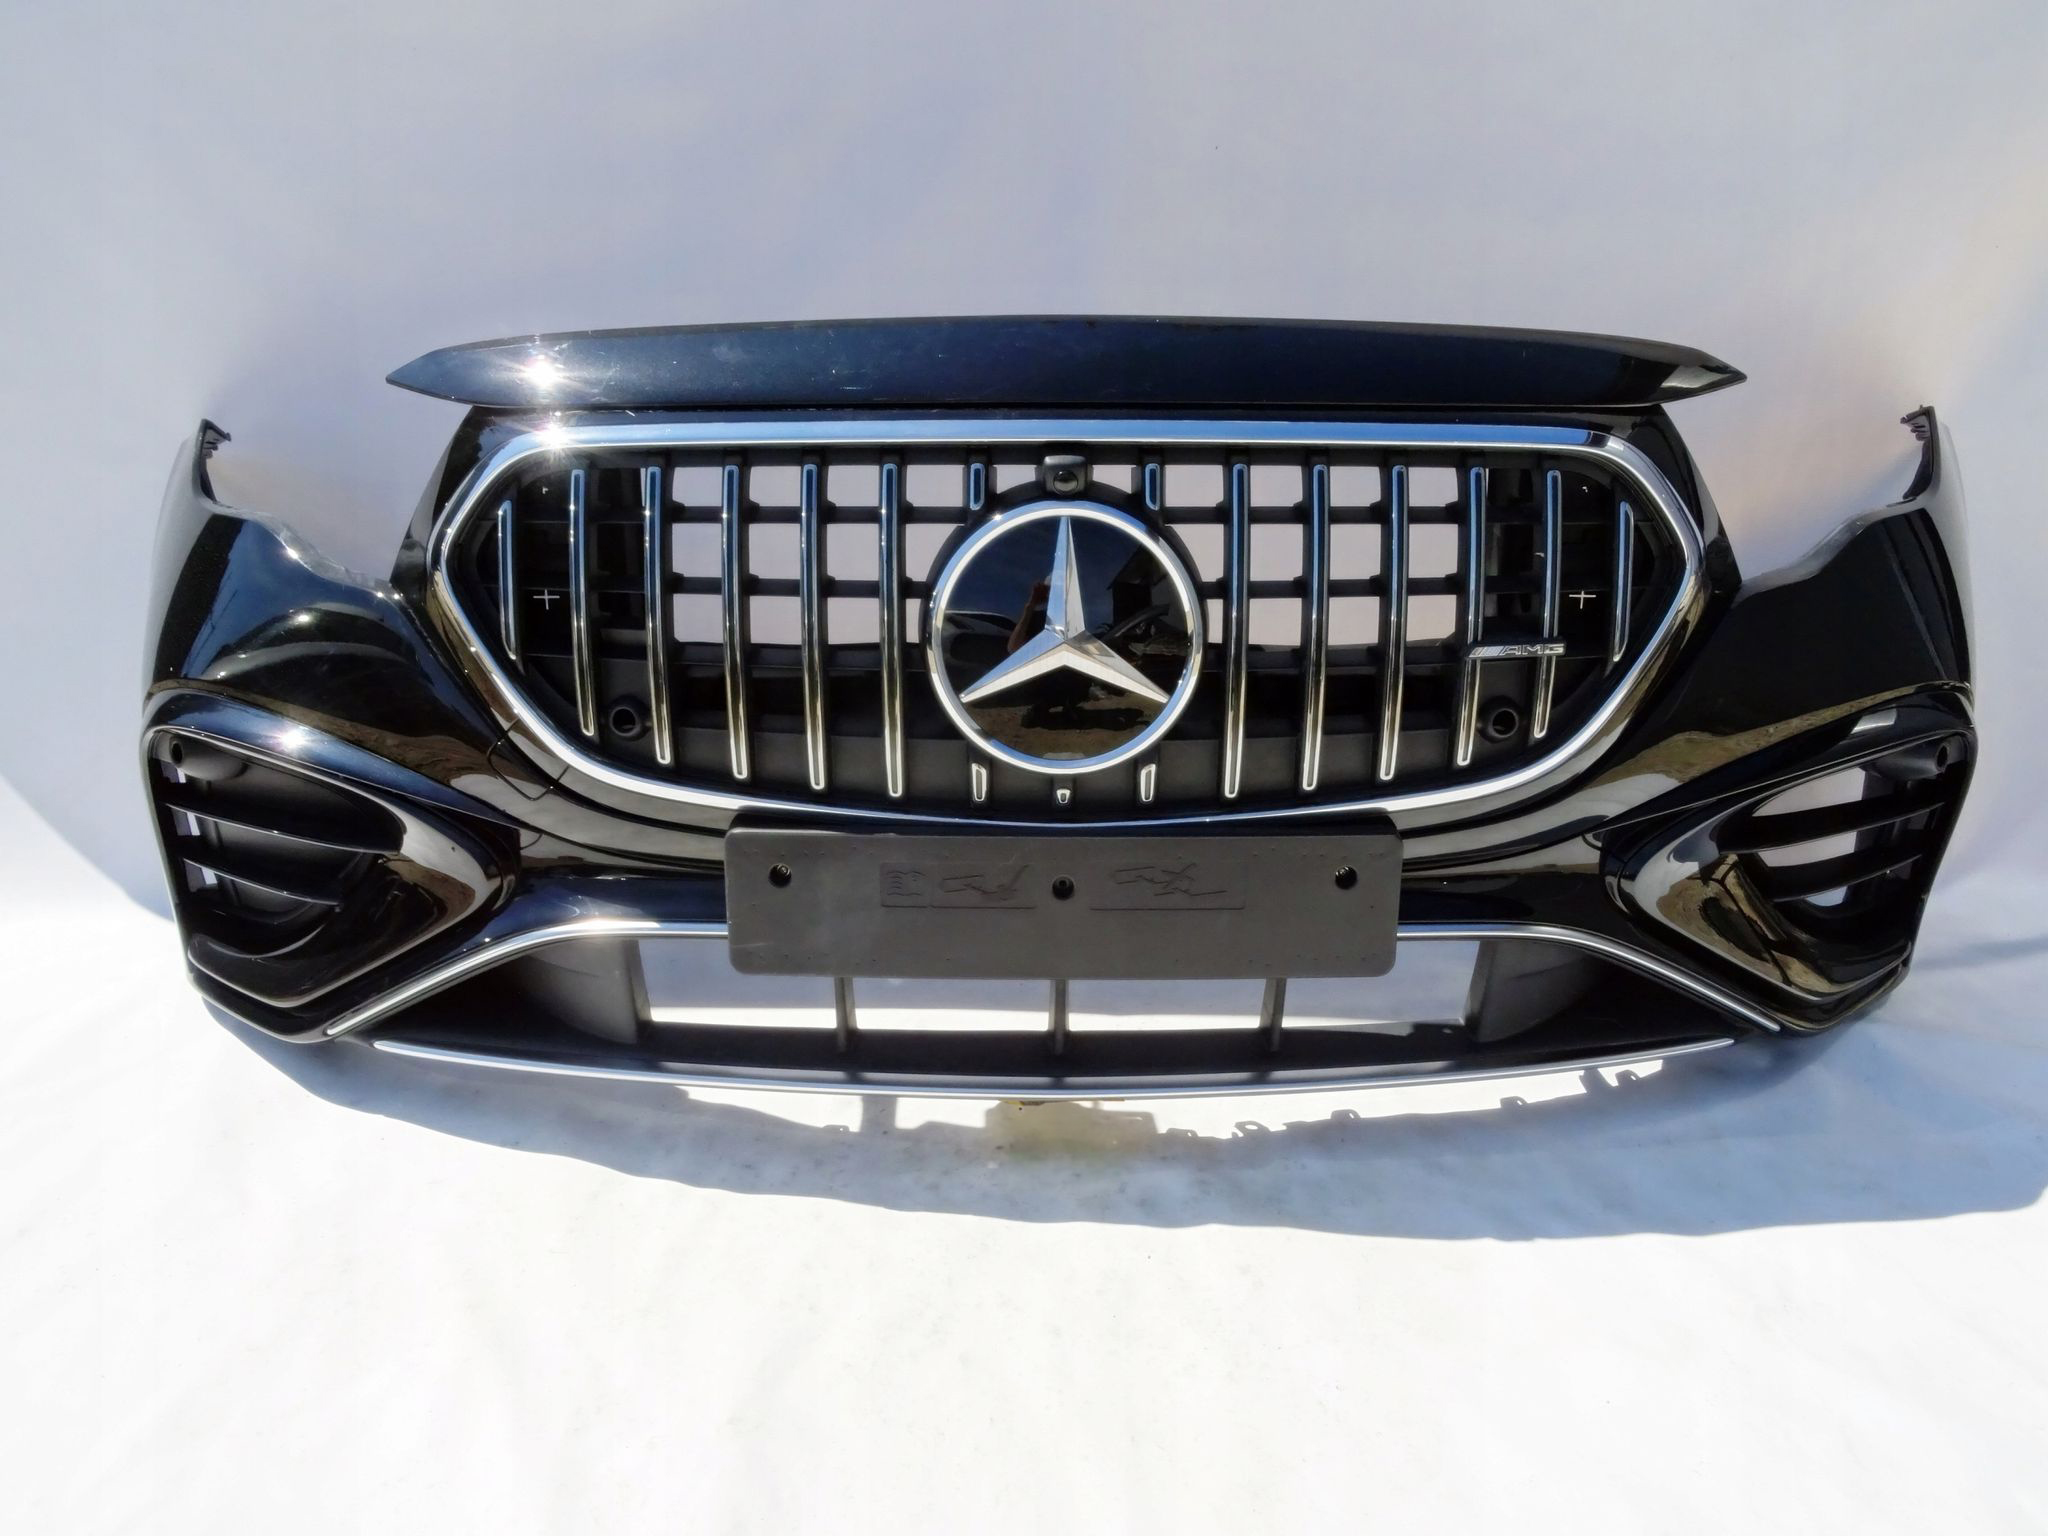 Mercedes C-Klasse bekommt neues AMG-Zubehör